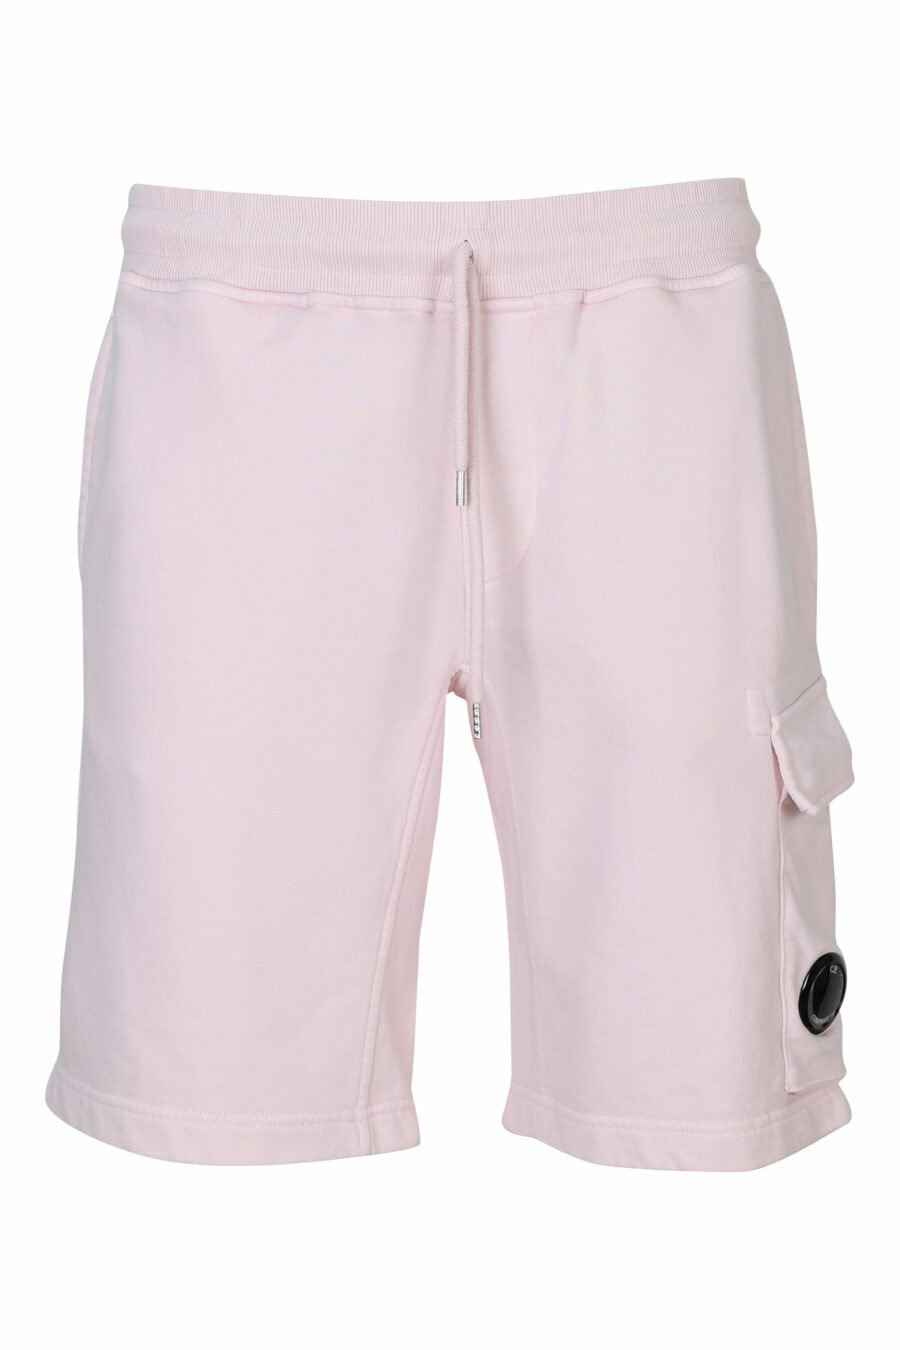 Pantalón de chándal midi rosa estilo cargo con minilogo lente - 7620943731262